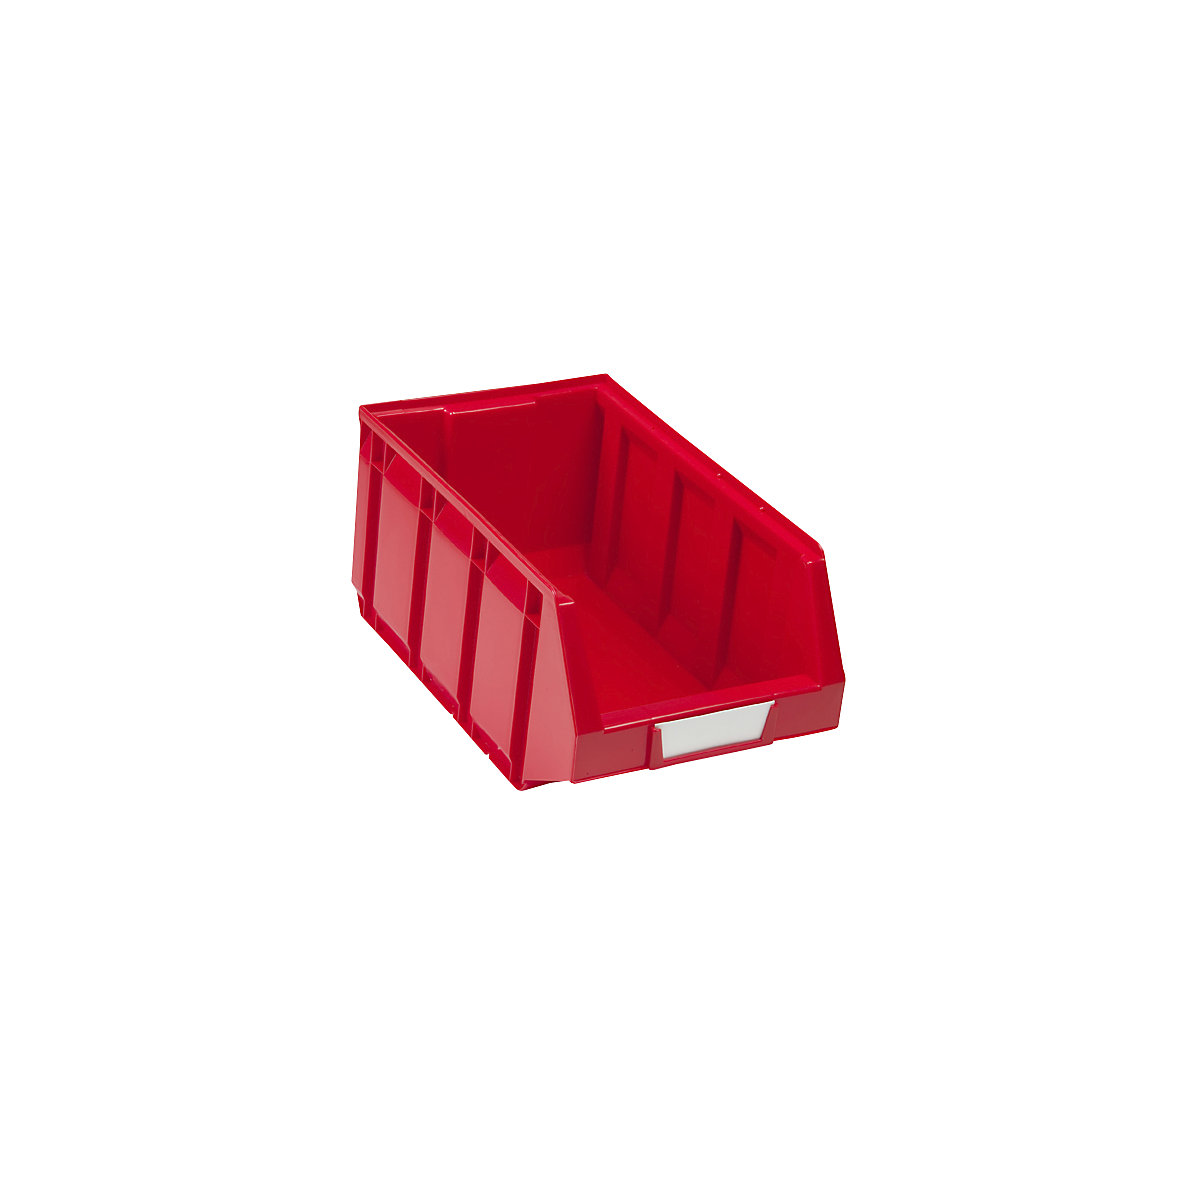 Odprta skladiščna škatla iz polietilena, DxŠxV 345 x 205 x 164 mm, rdeča, DE 24 kosov-7